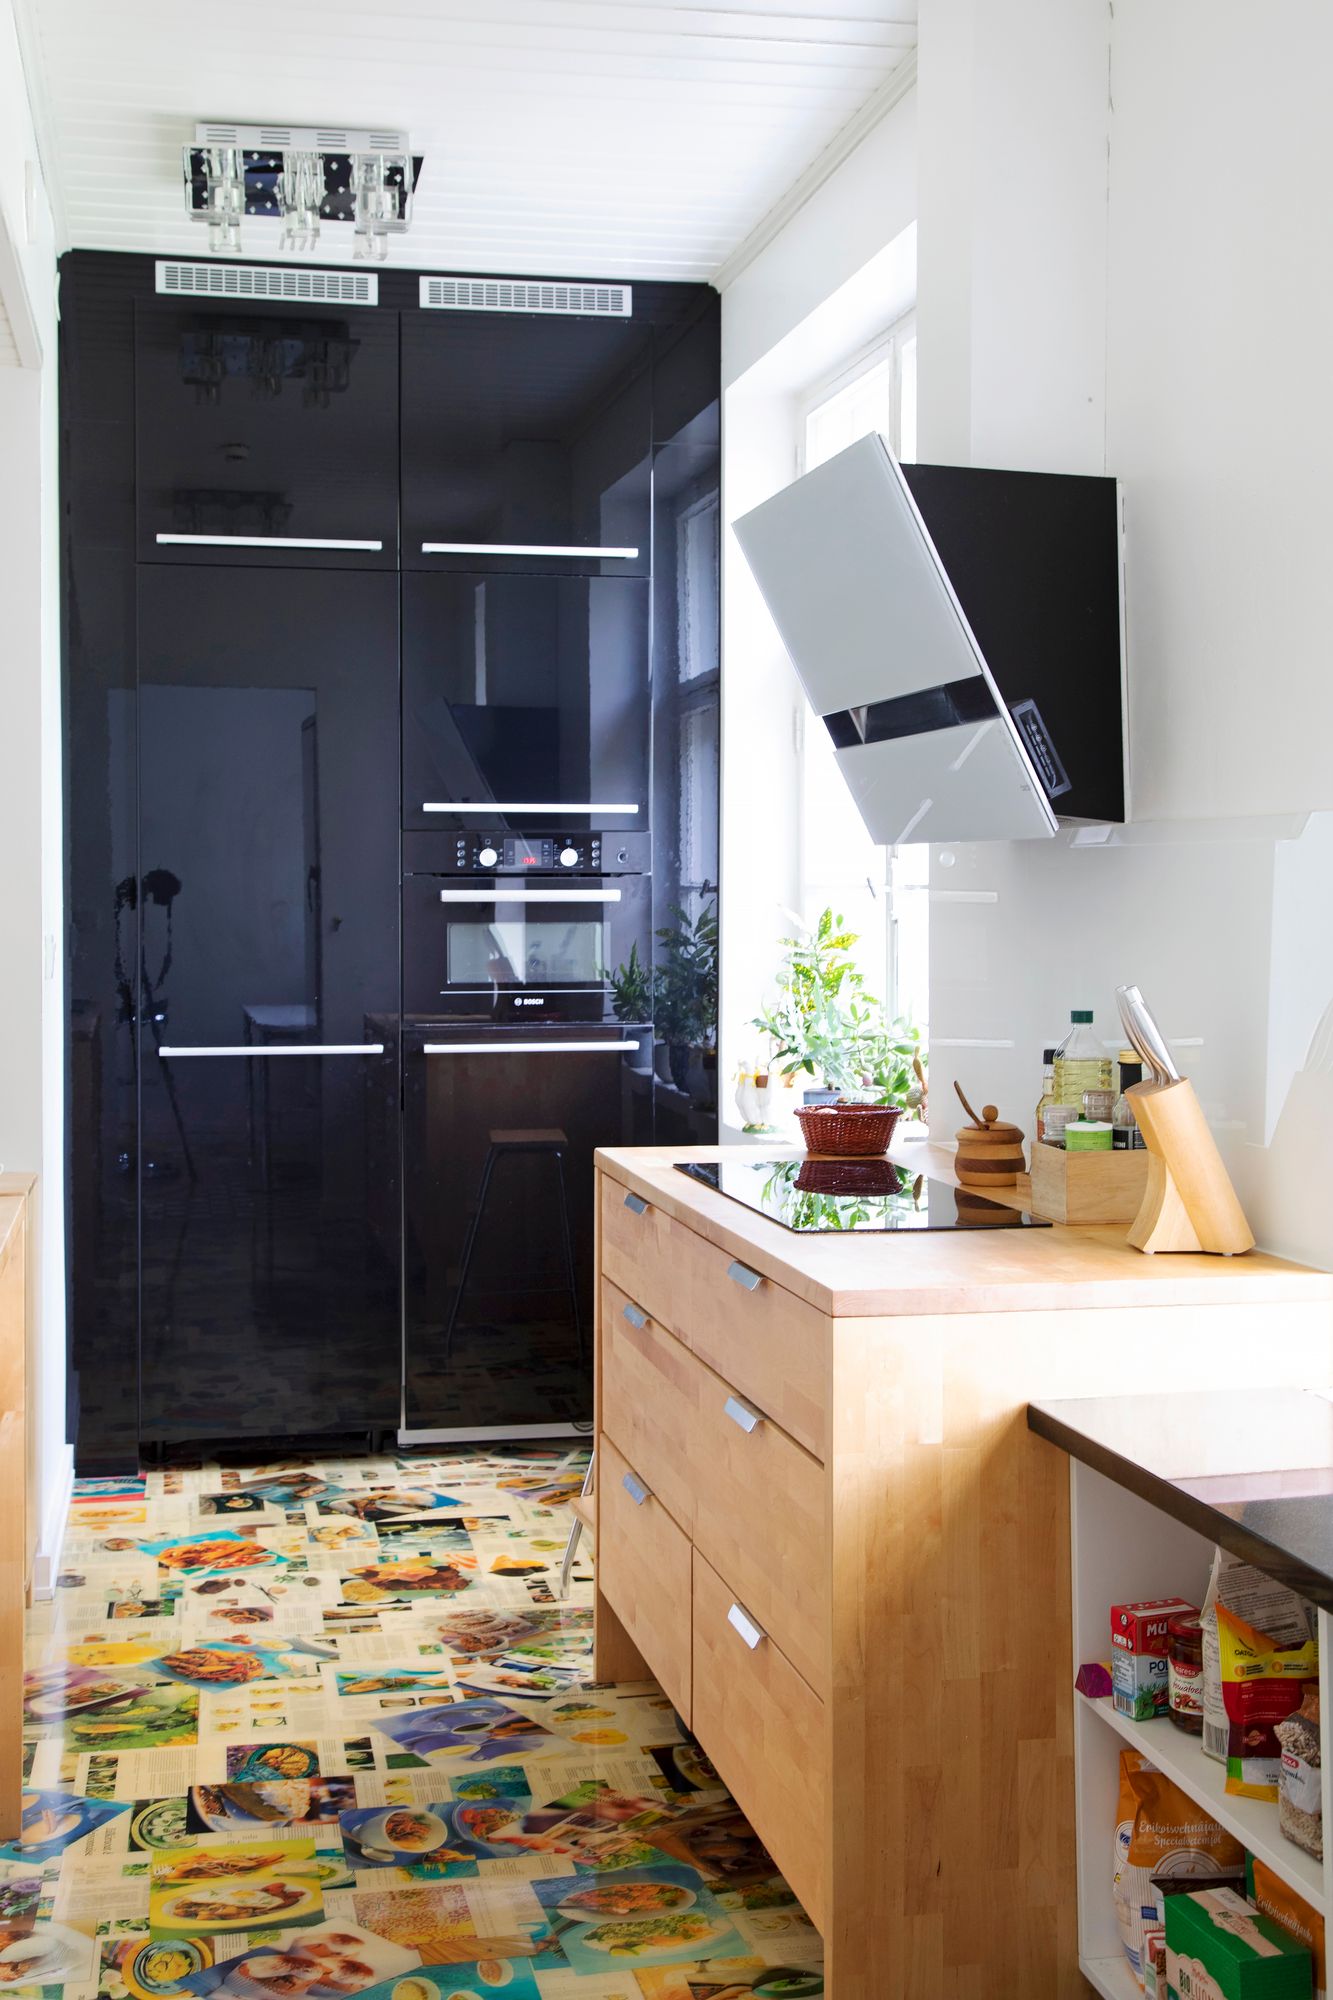 Keittiön lattian kuviot ovat keittokirjan sivuja. © Suvi Elo